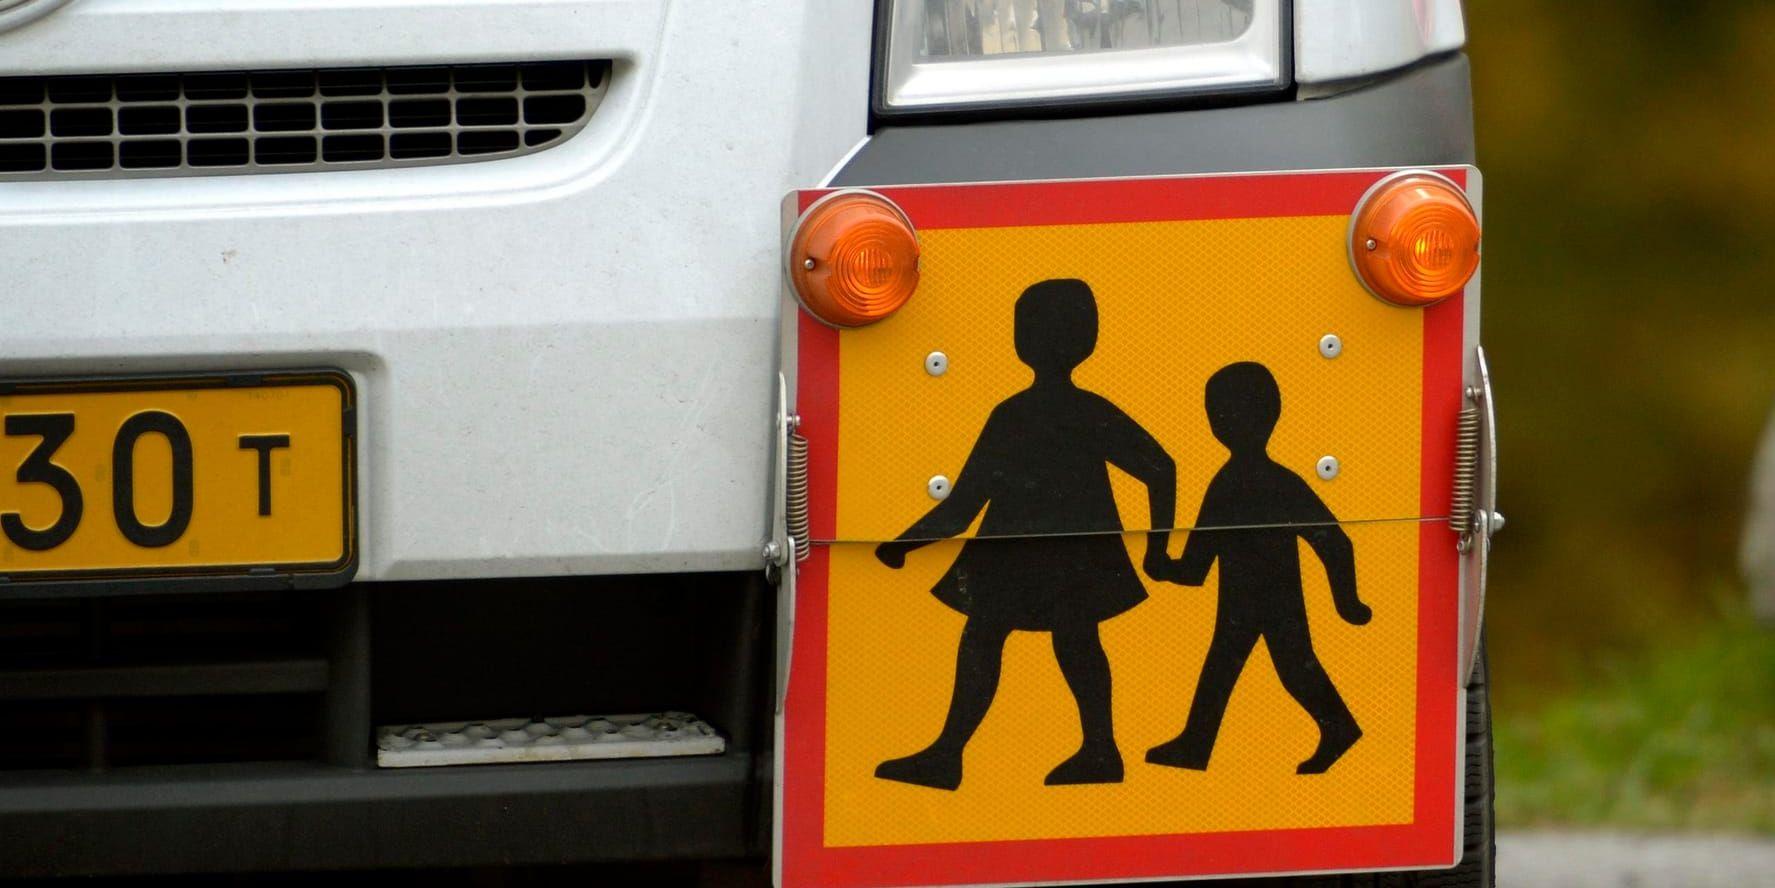 En skolbuss utan chaufför börjare rulla med skolbarn ombord. Arkivbild.